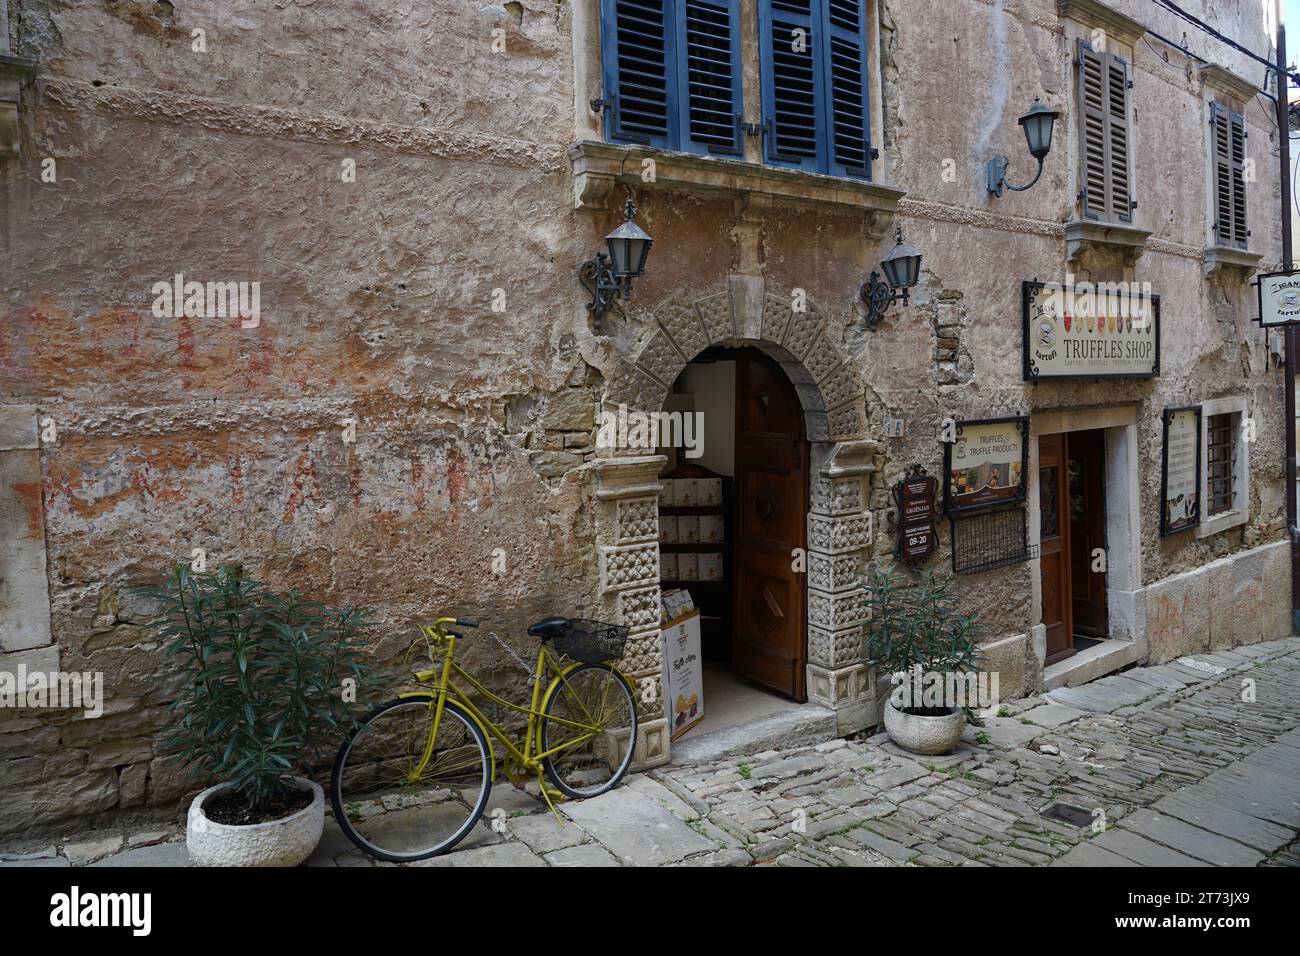 10.11.2023, Groznjan, Croatie : charmant petit village en Croatie appelé la Toscane d'istrie avec des murs en pierre et de belles portes et fenêtres magasin de truffes Banque D'Images